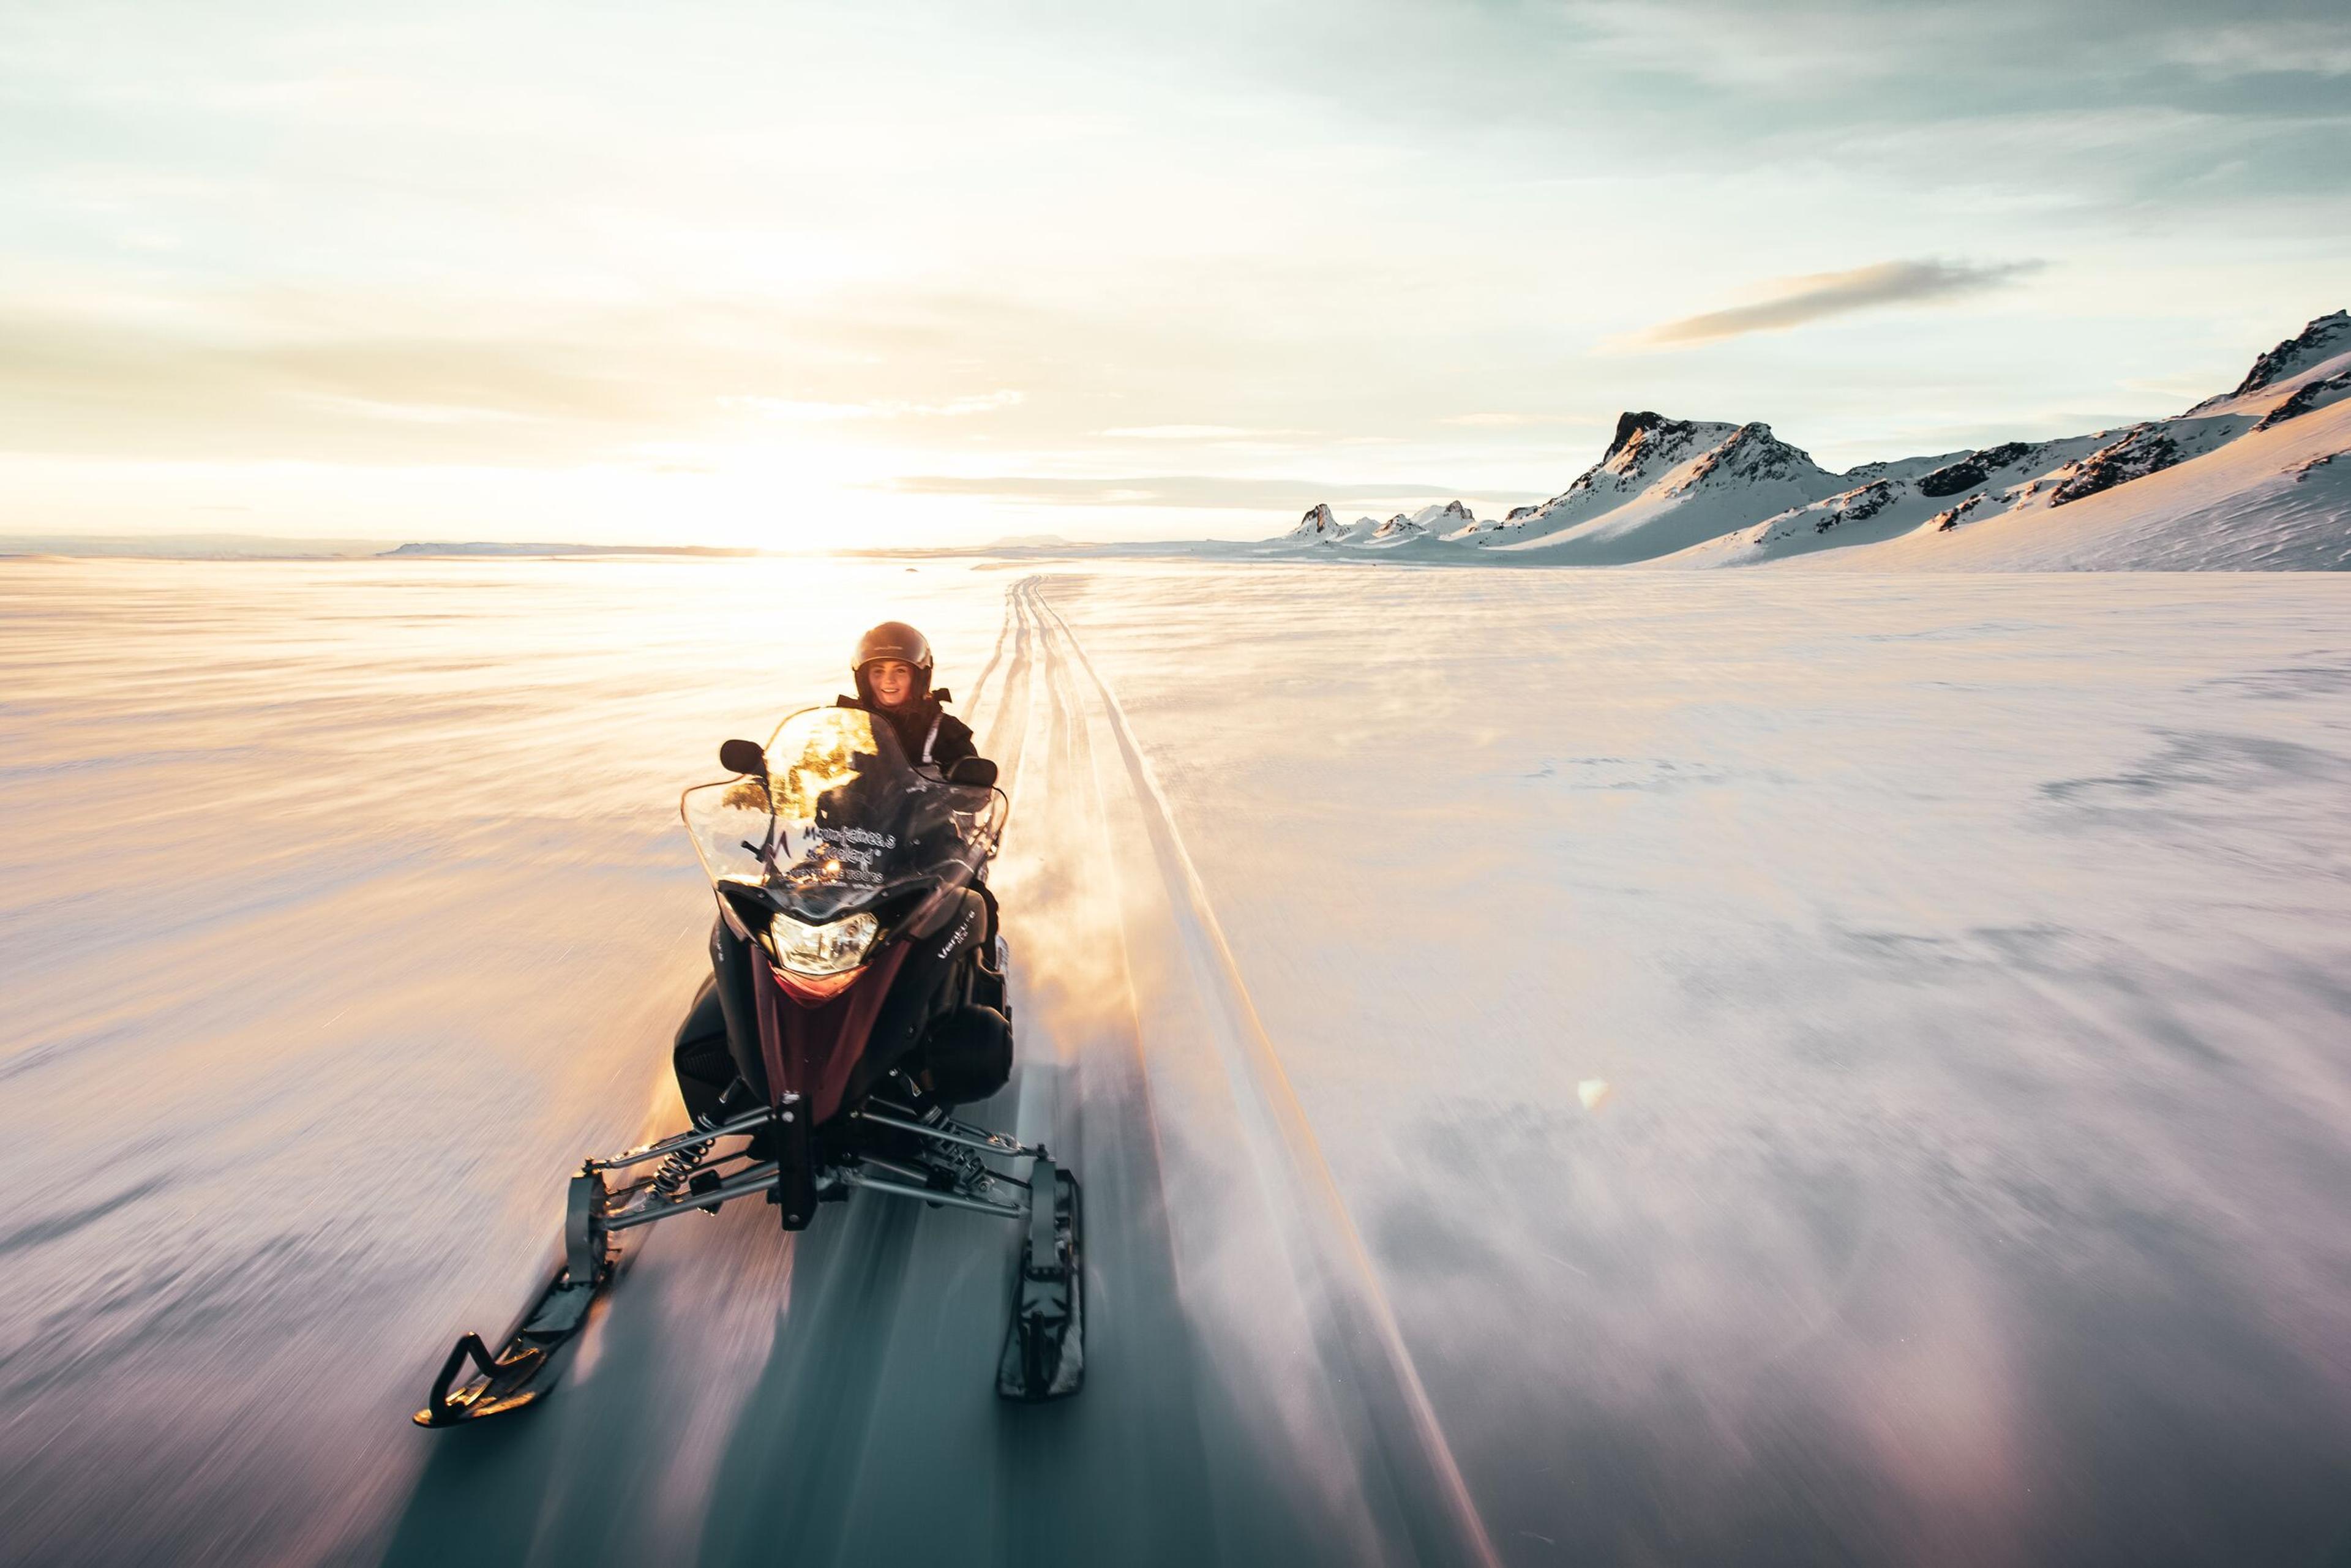 Explorer on a snowmobile on Langjökull glacier in Iceland.